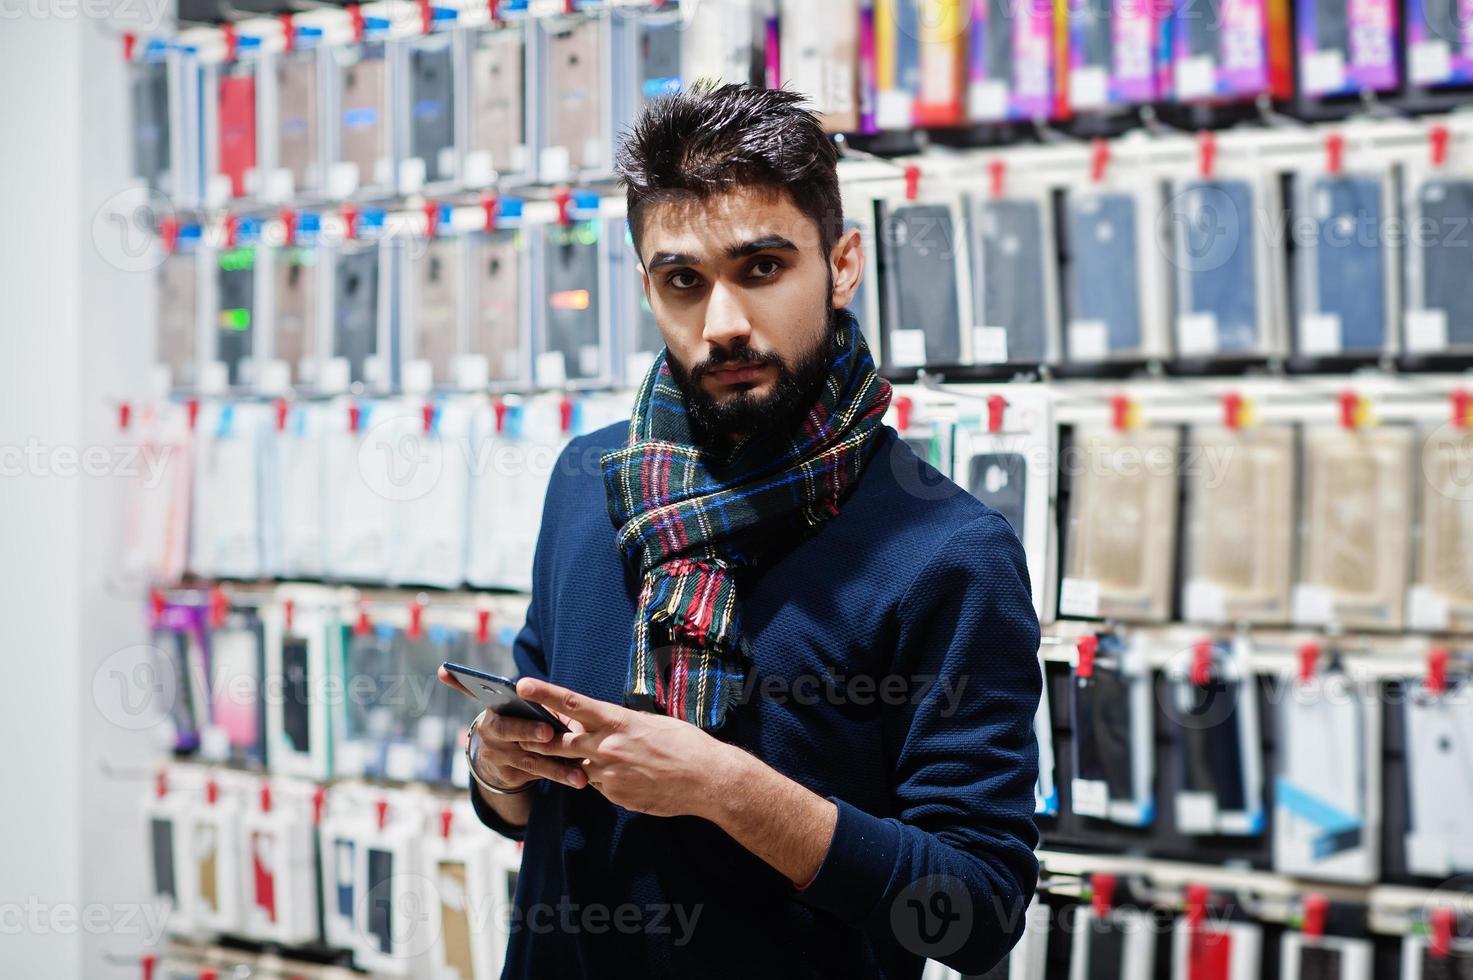 indisk skäggman kund köpare på mobiltelefon butik tittar på sin smartphone. sydasiatiska folk och teknik koncept. mobiltelefon butik. foto